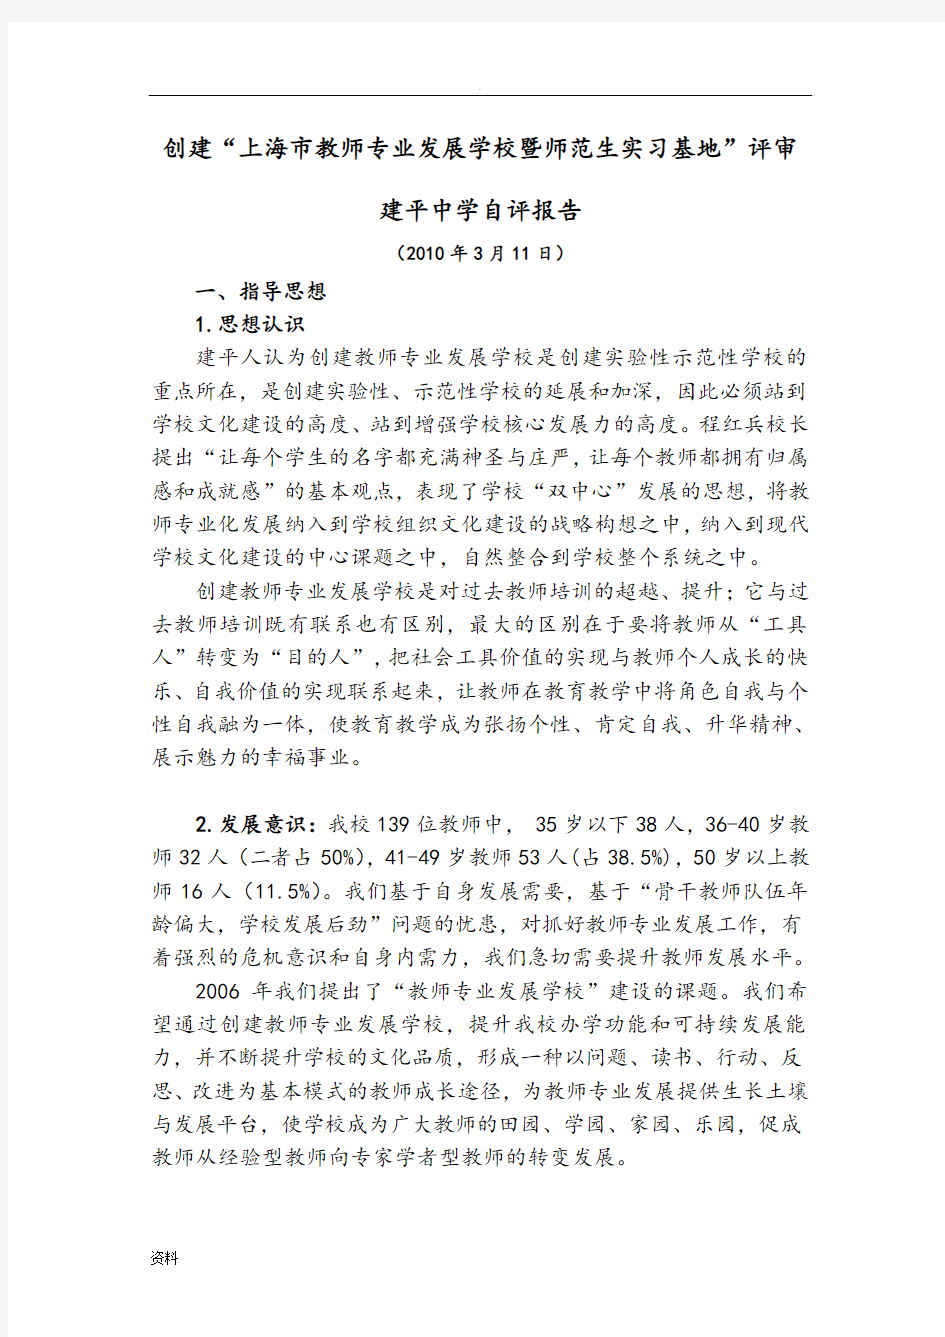 创建上海市教师专业发展学校工作自评报告